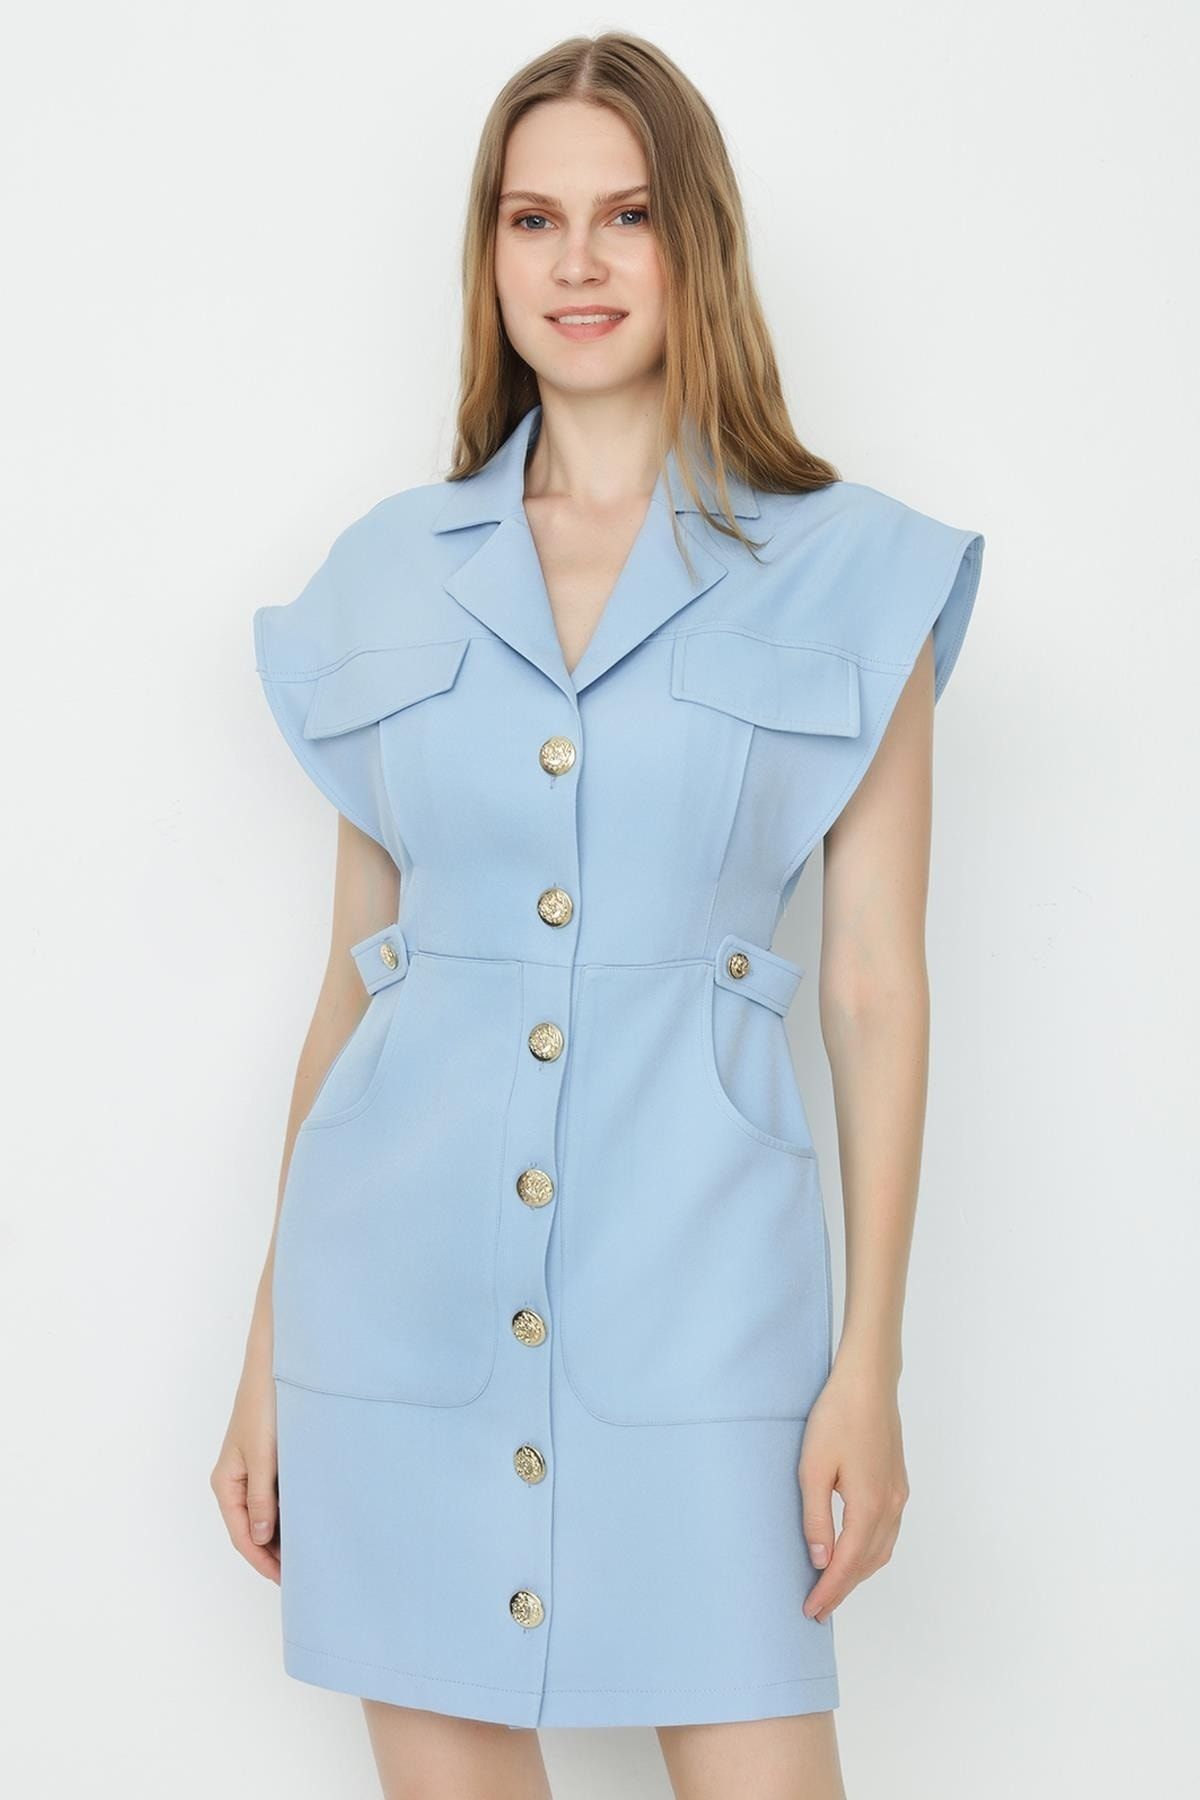 Select Moda Kadın Açık Mavi Dokuma Düğme Detaylı Gömlek Elbise